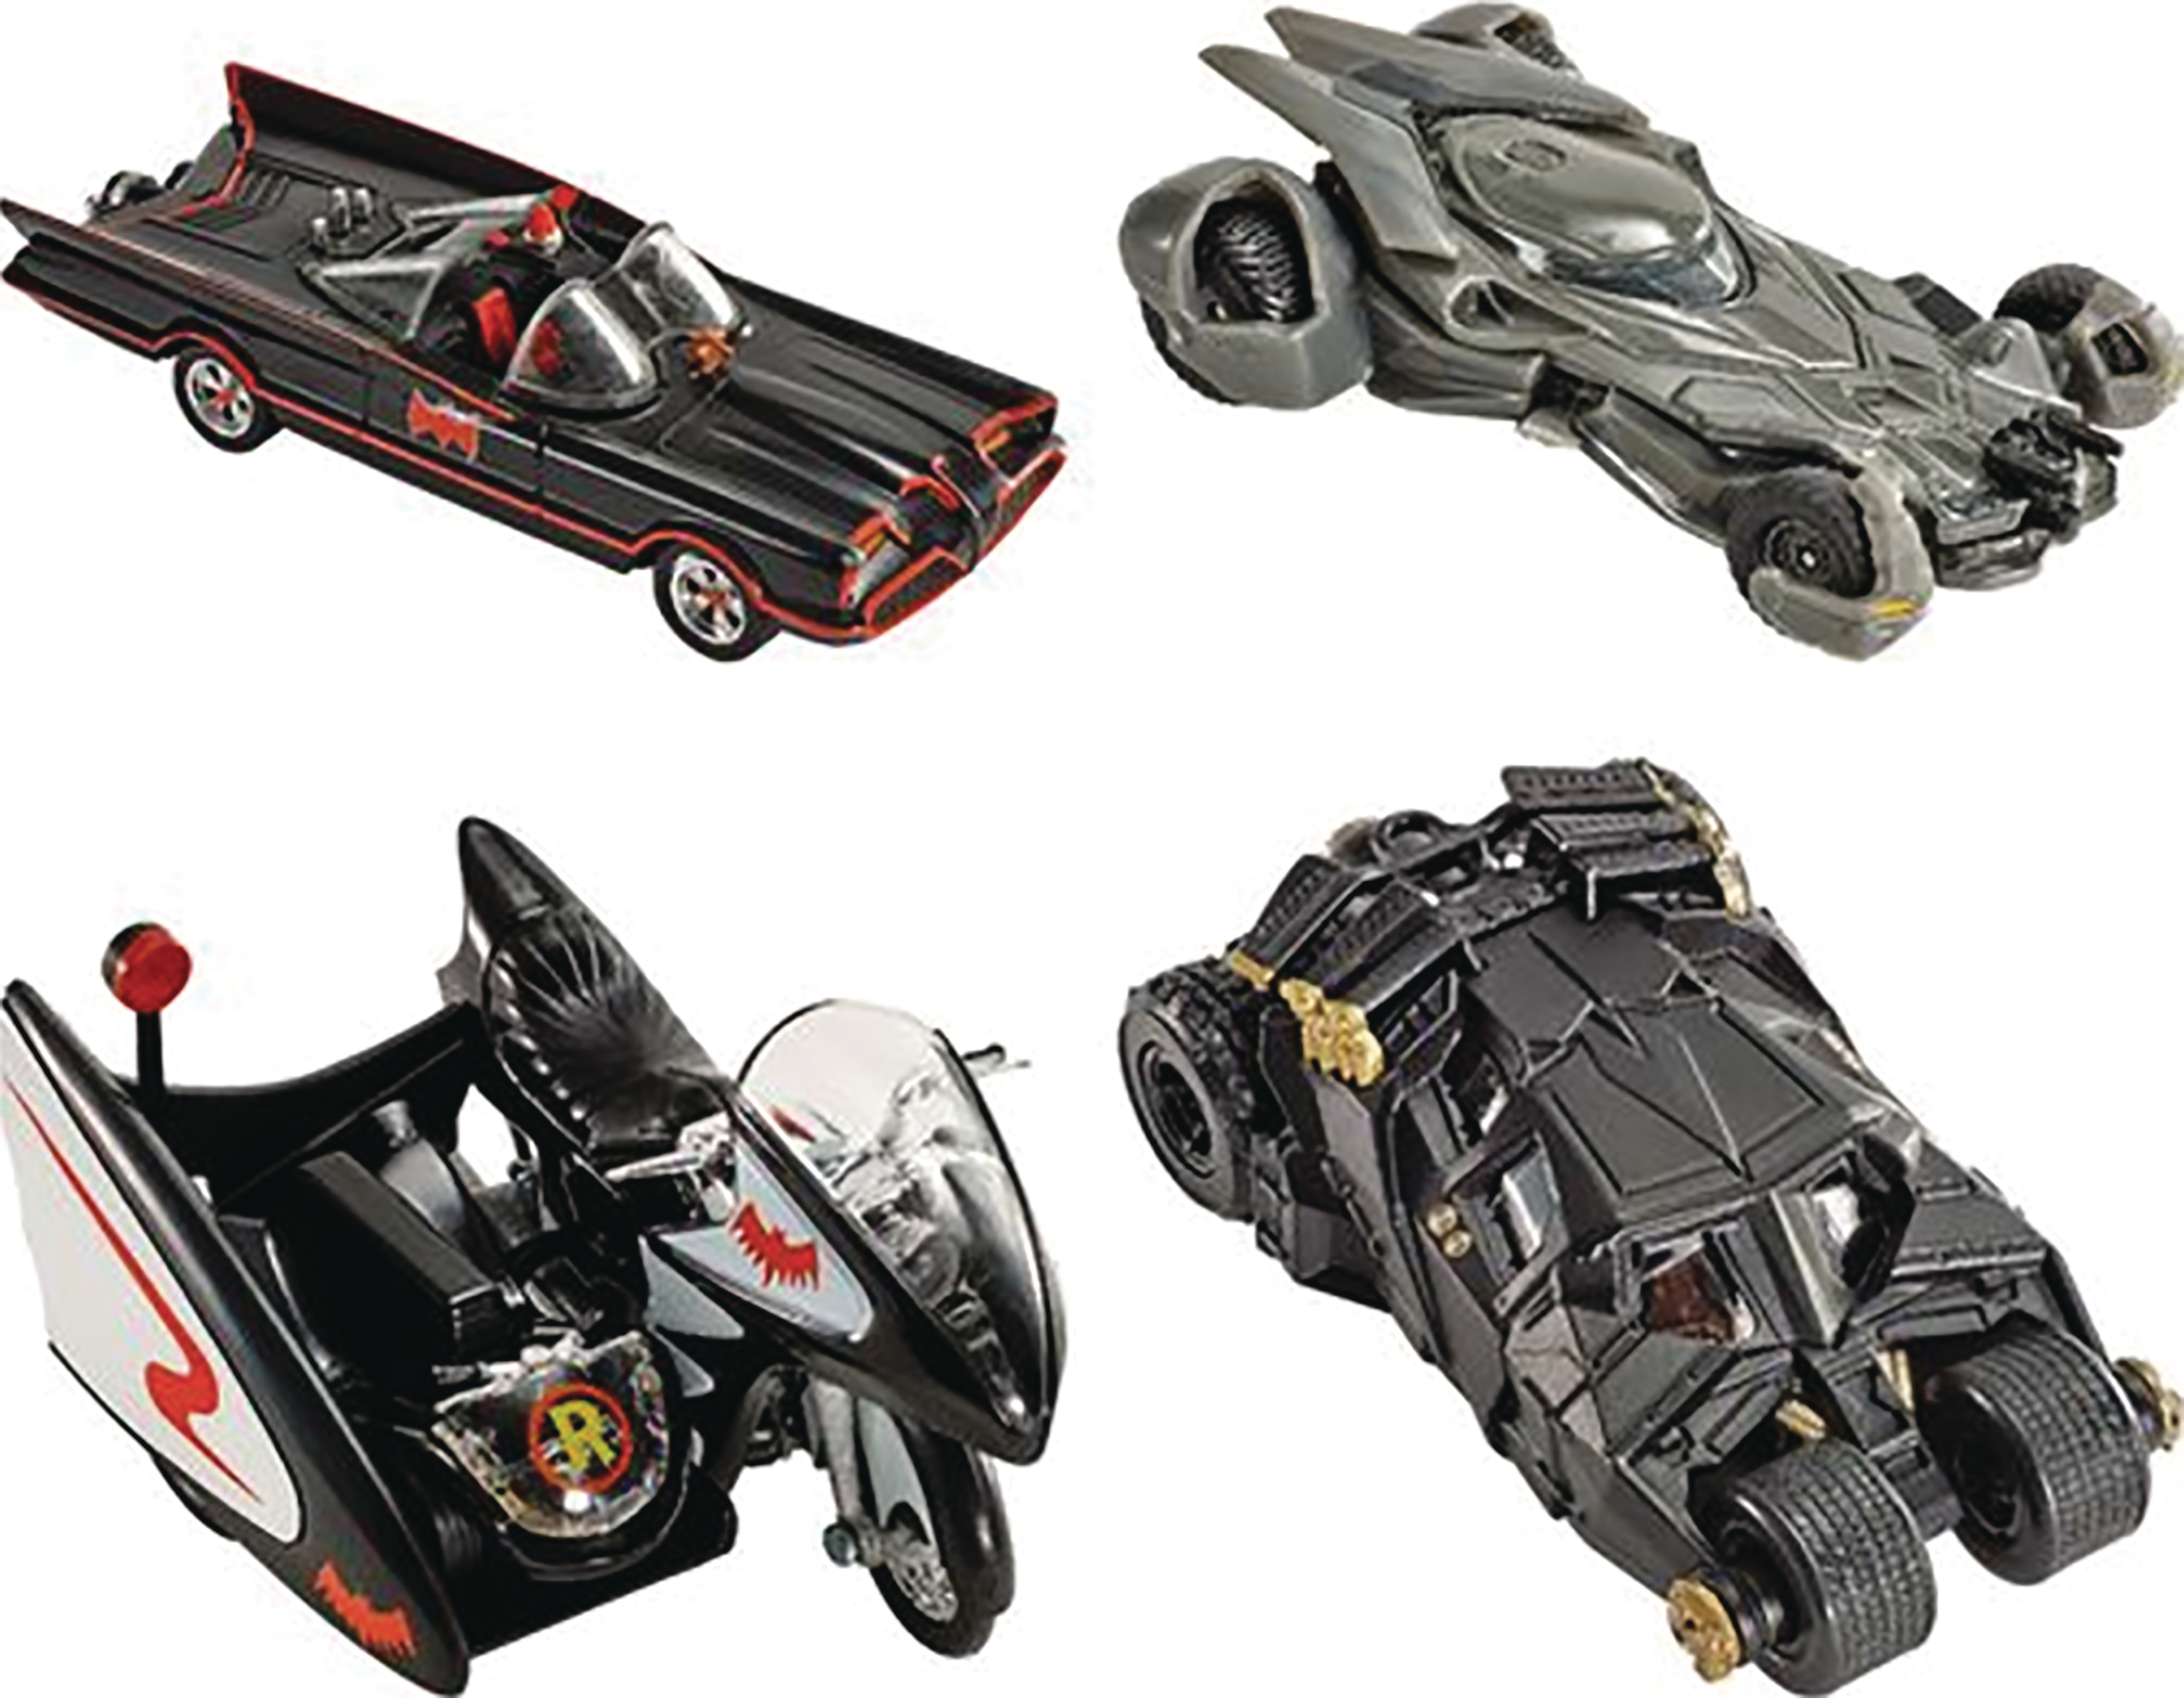 Details about  / Hot Wheels ~ Batman Series ~ BATMOBILE ~ 1:50 Scale Die-Cast Vehicle